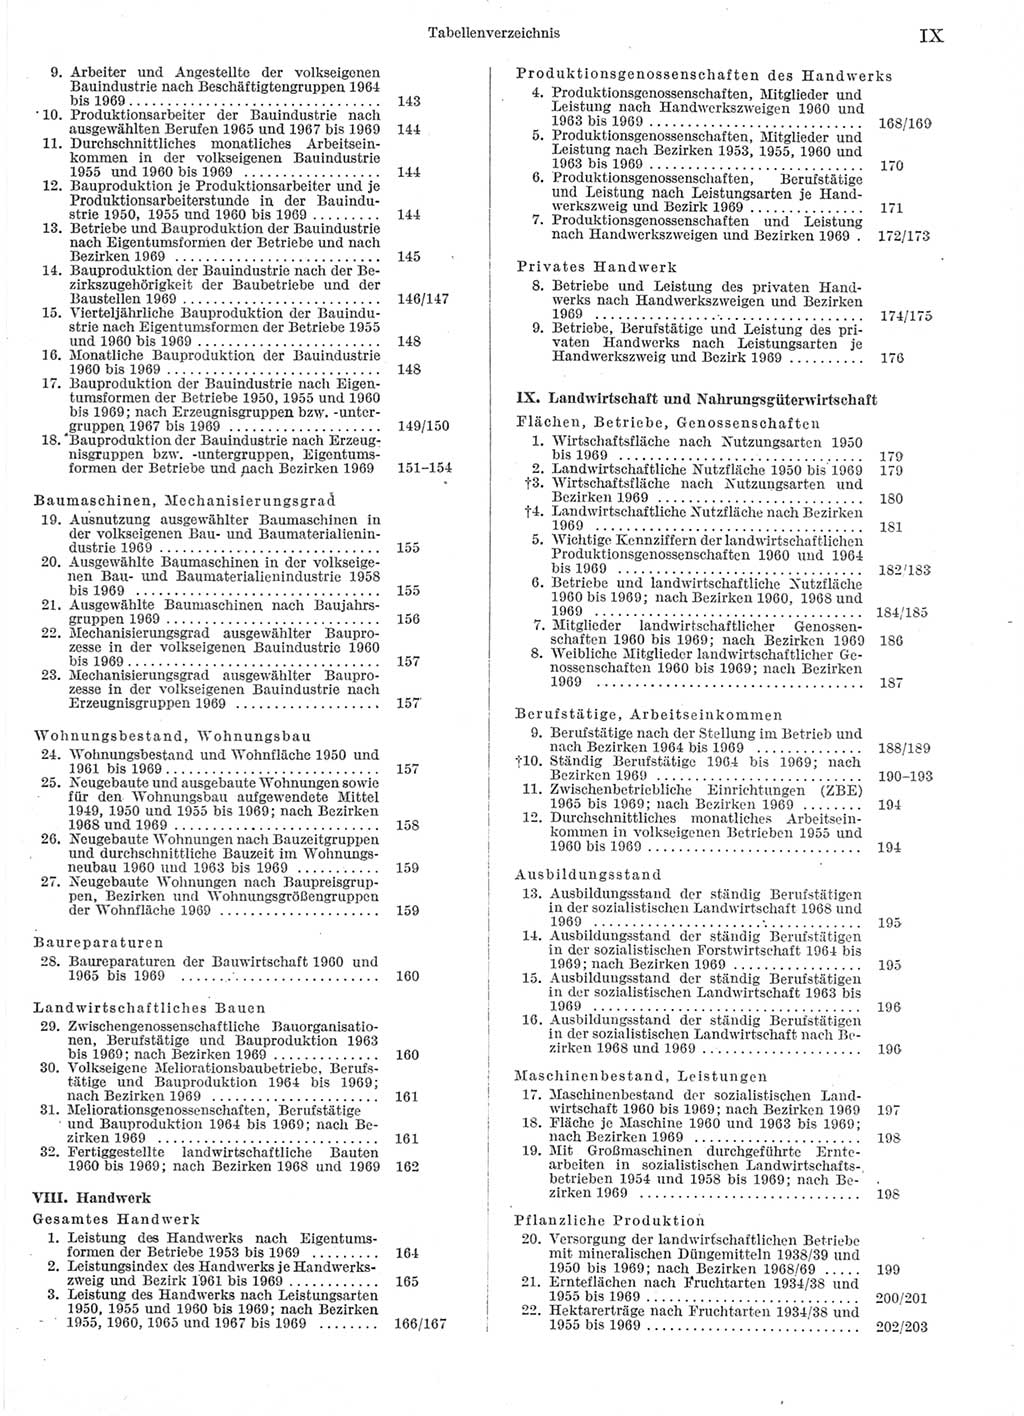 Statistisches Jahrbuch der Deutschen Demokratischen Republik (DDR) 1970, Seite 9 (Stat. Jb. DDR 1970, S. 9)